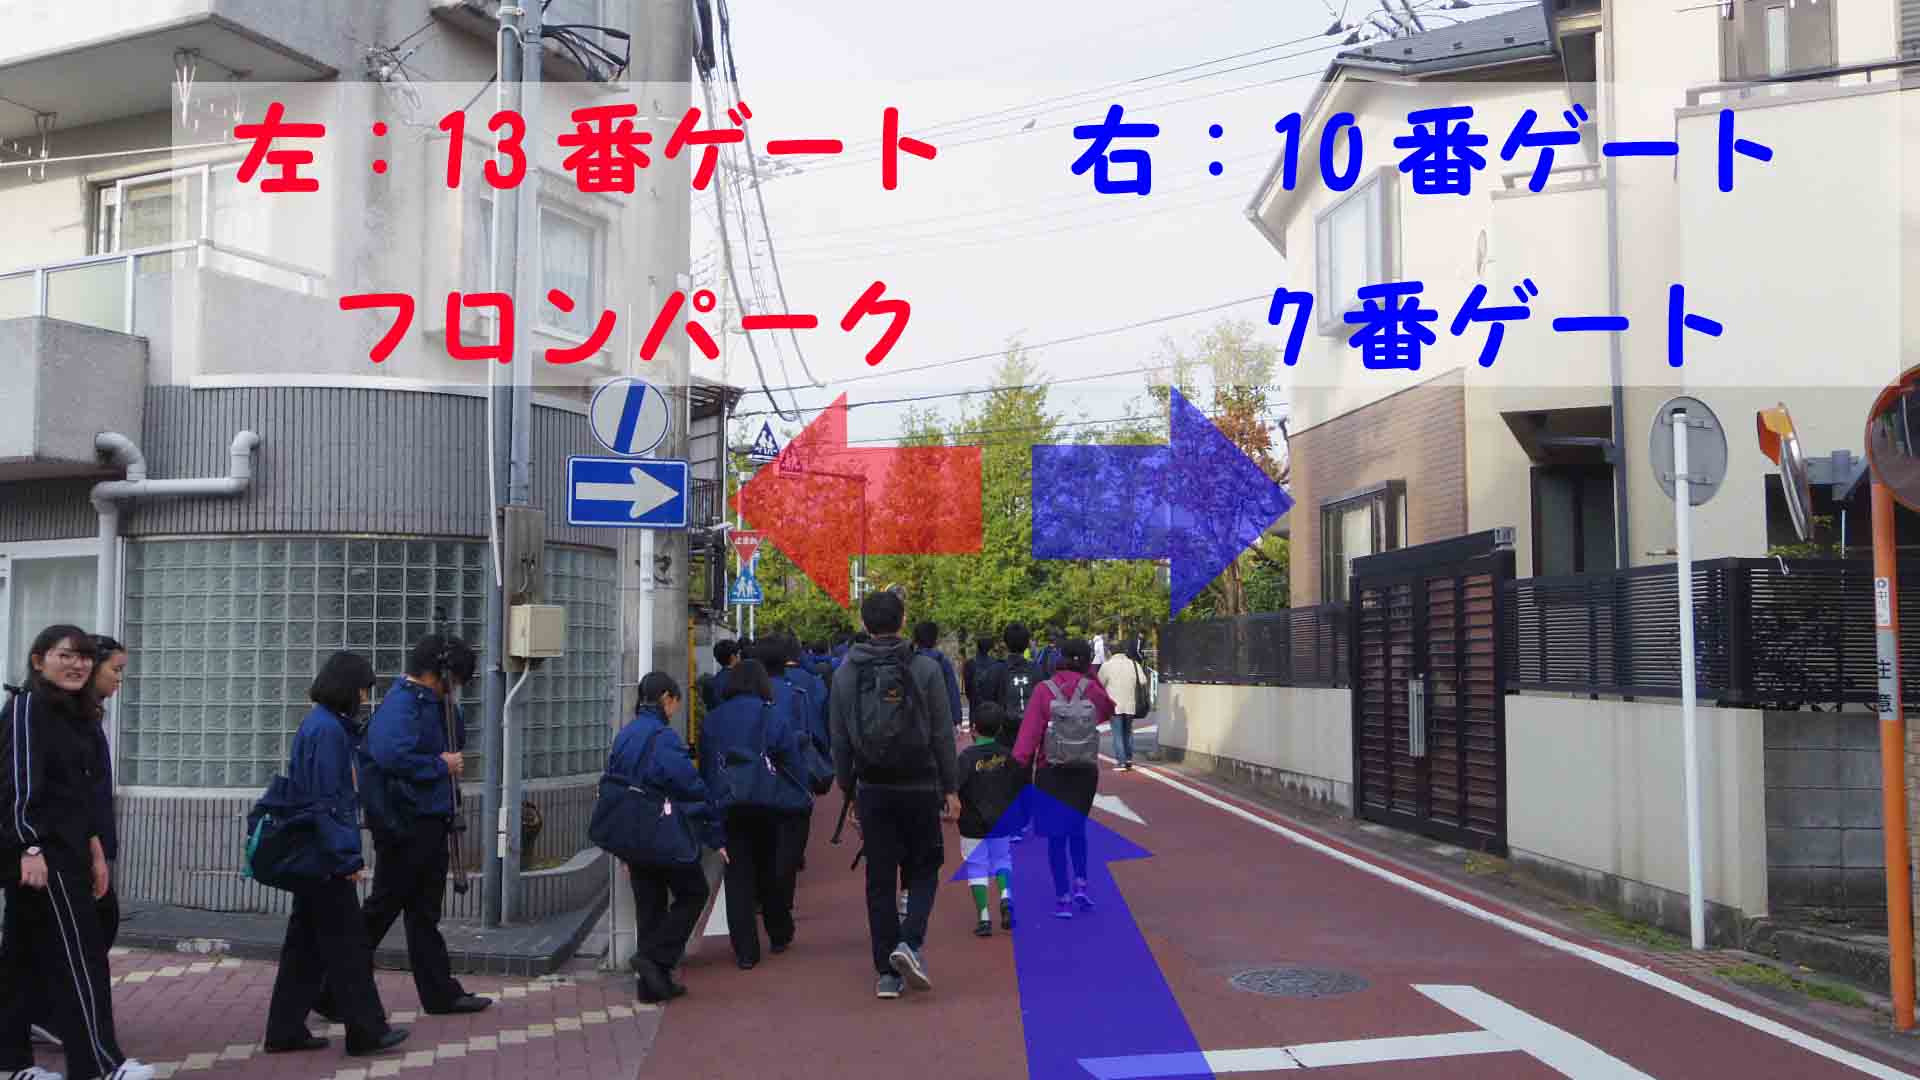 新丸子駅から等々力競技場への徒歩での行き方 分間を写真付きで解説するよ 川崎フロンターレフロサポのかぶろぐ